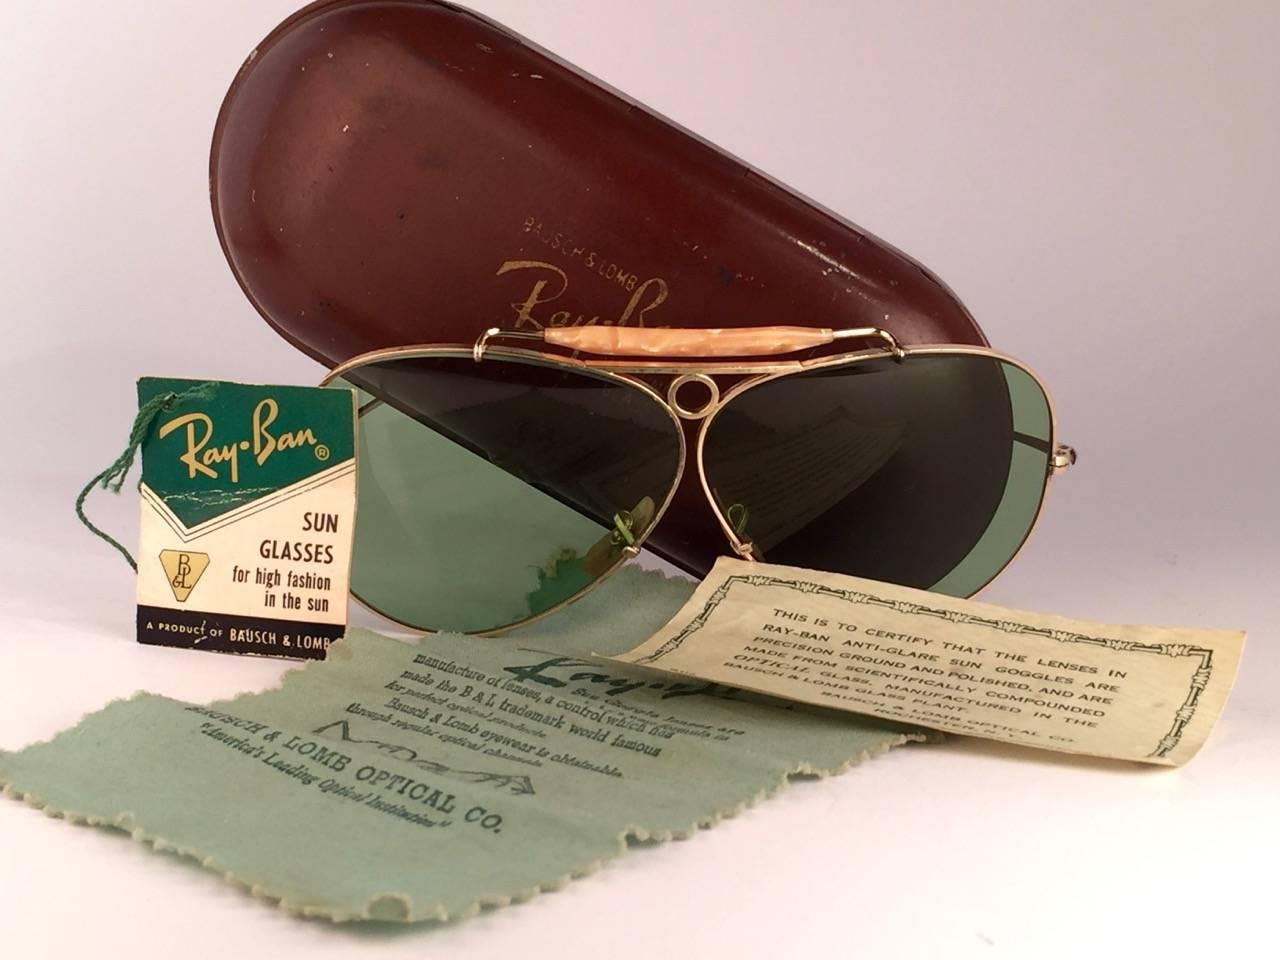 Superbe paire de lunettes Ray Ban Classic Outdoorsman 62Mm avec monture en or 12K. 

1950's USA Made by Bausch and Lomb. Original True Green RB3 B&L lentilles. Cadre droit comme une flèche avec navigateur en nacre. Tous les signes distinctifs.